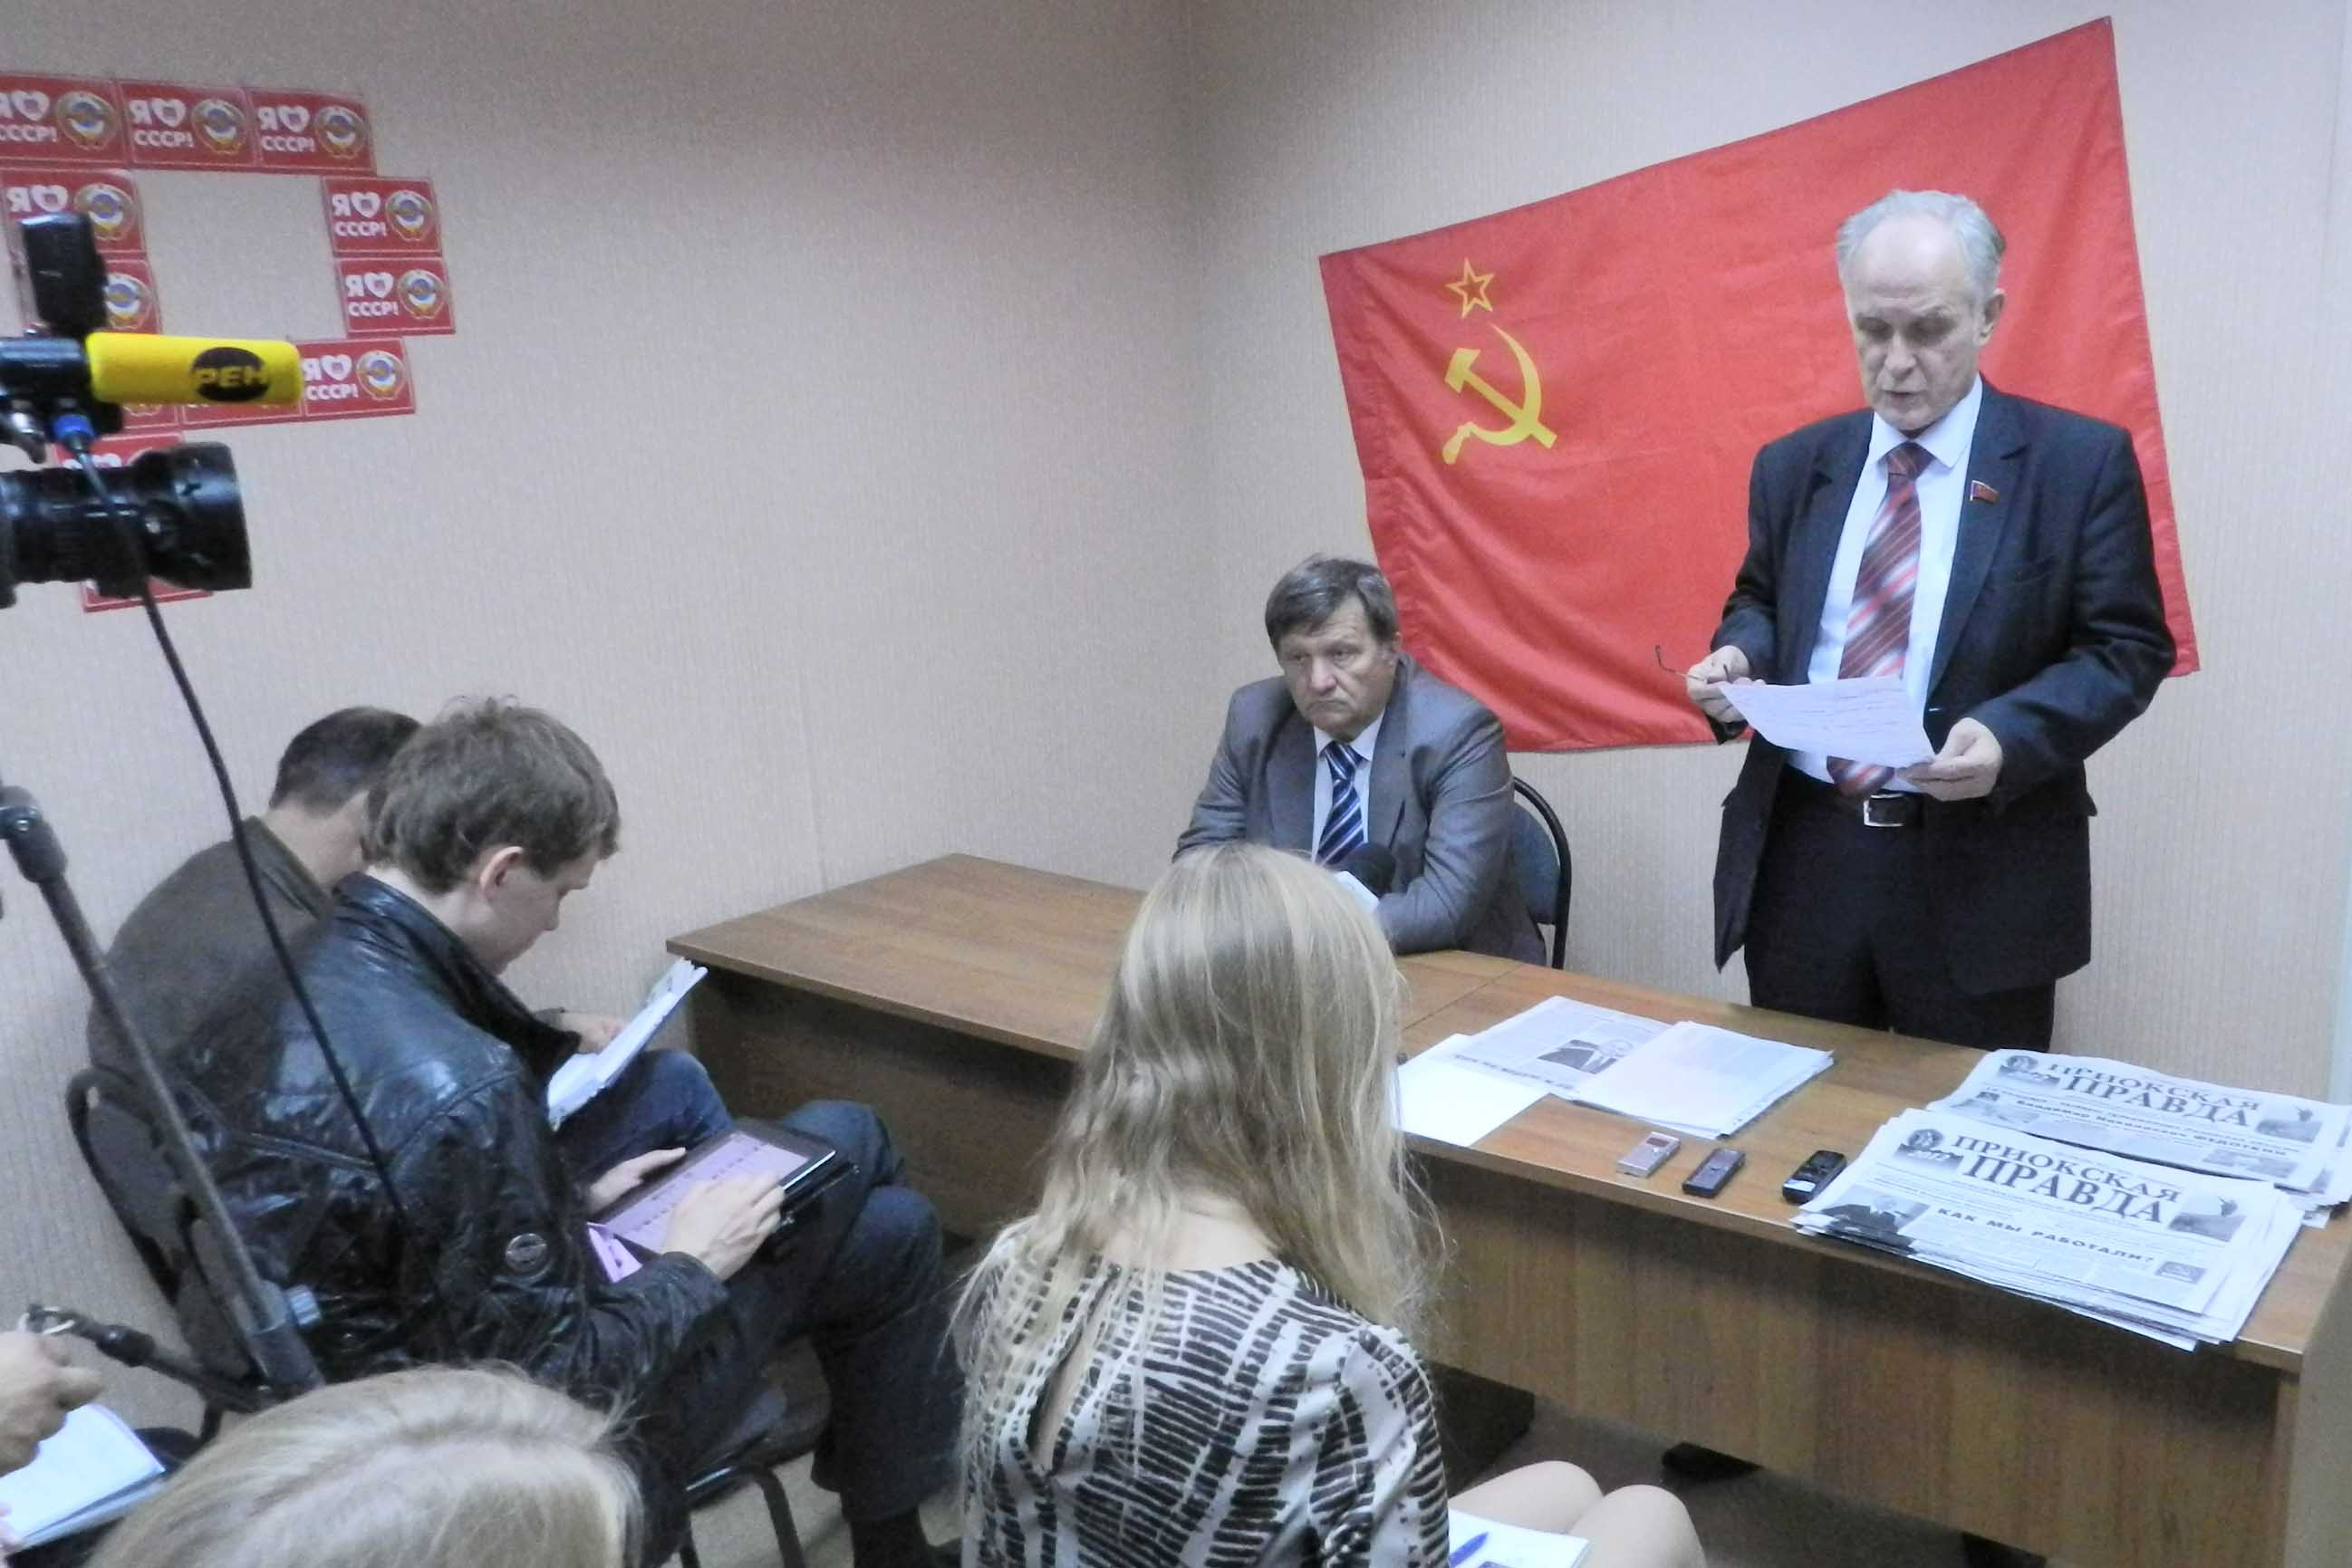 6 сентября 2012 года прошла пресс-конференция В.Н. Федоткина